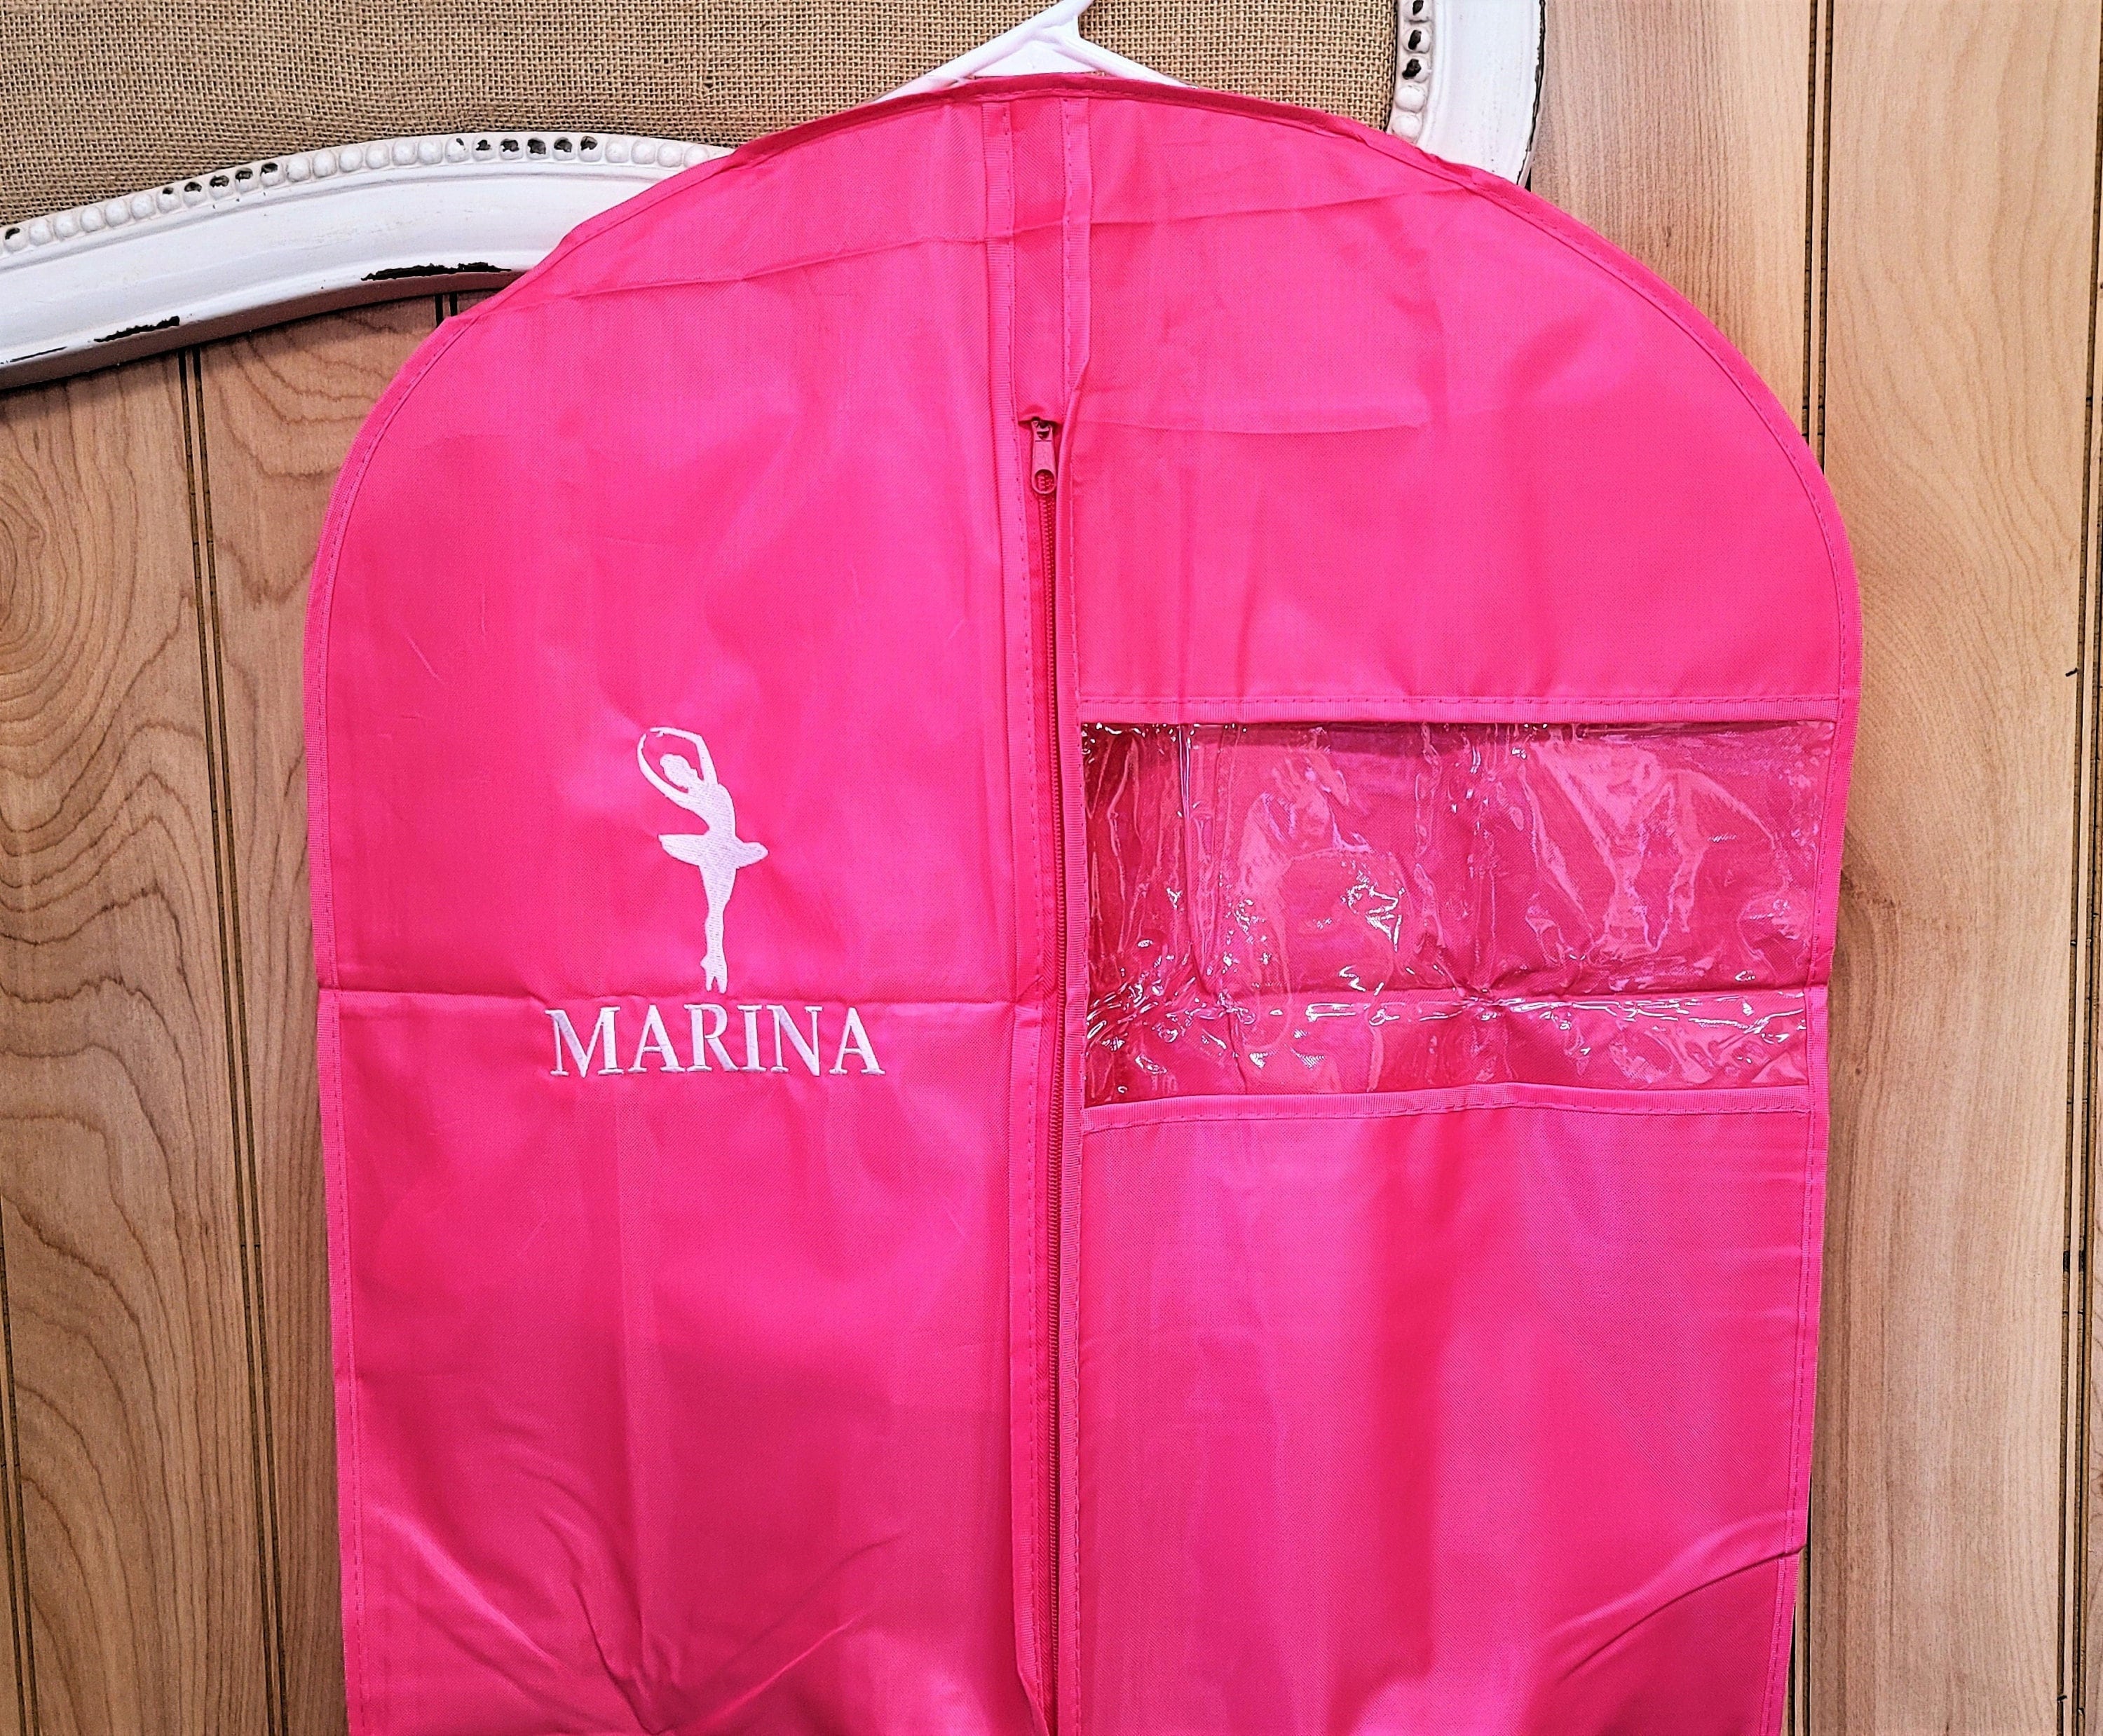 Monogram Hanging Garment Bag Water Resistant Personalized 